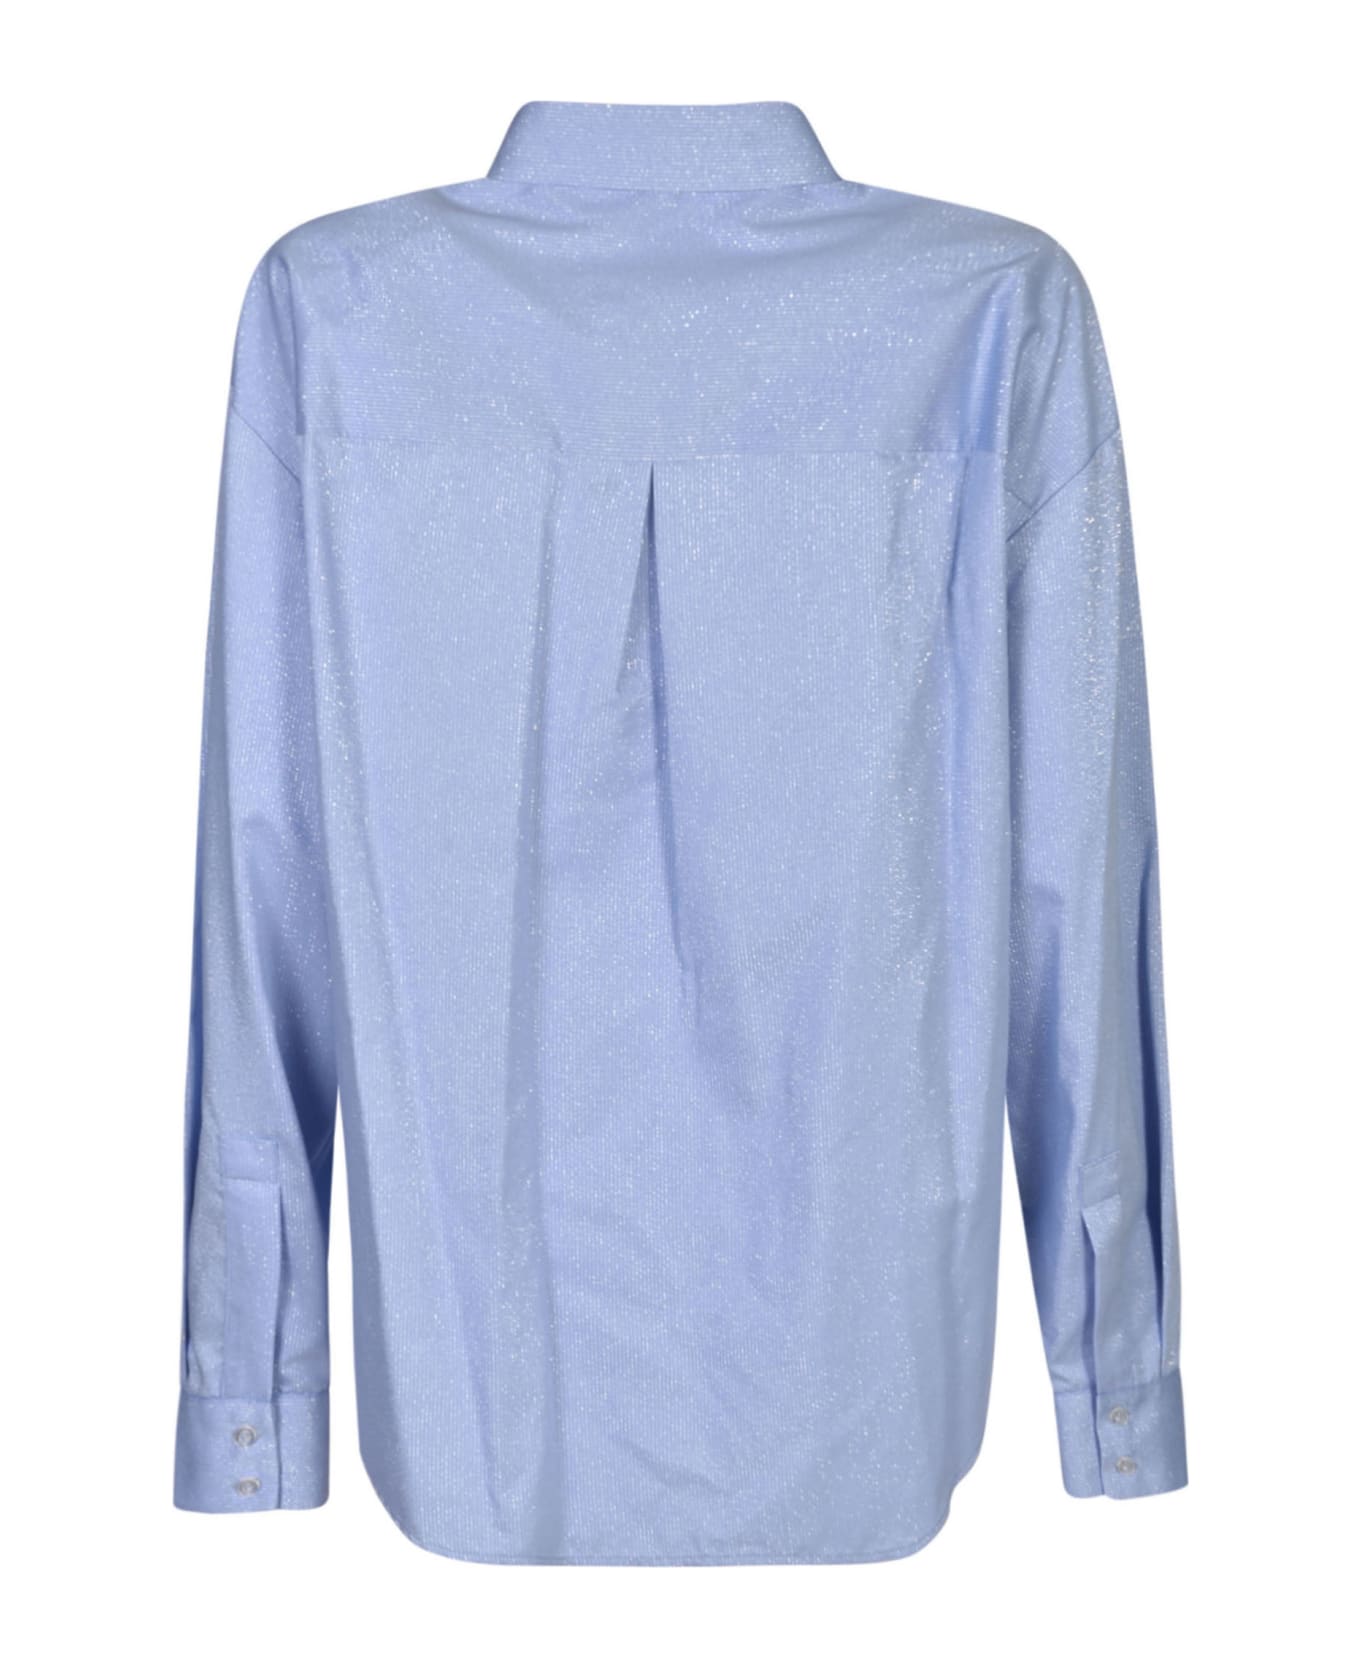 Chiara Ferragni Long-sleeved Glittered Shirt - Blue シャツ